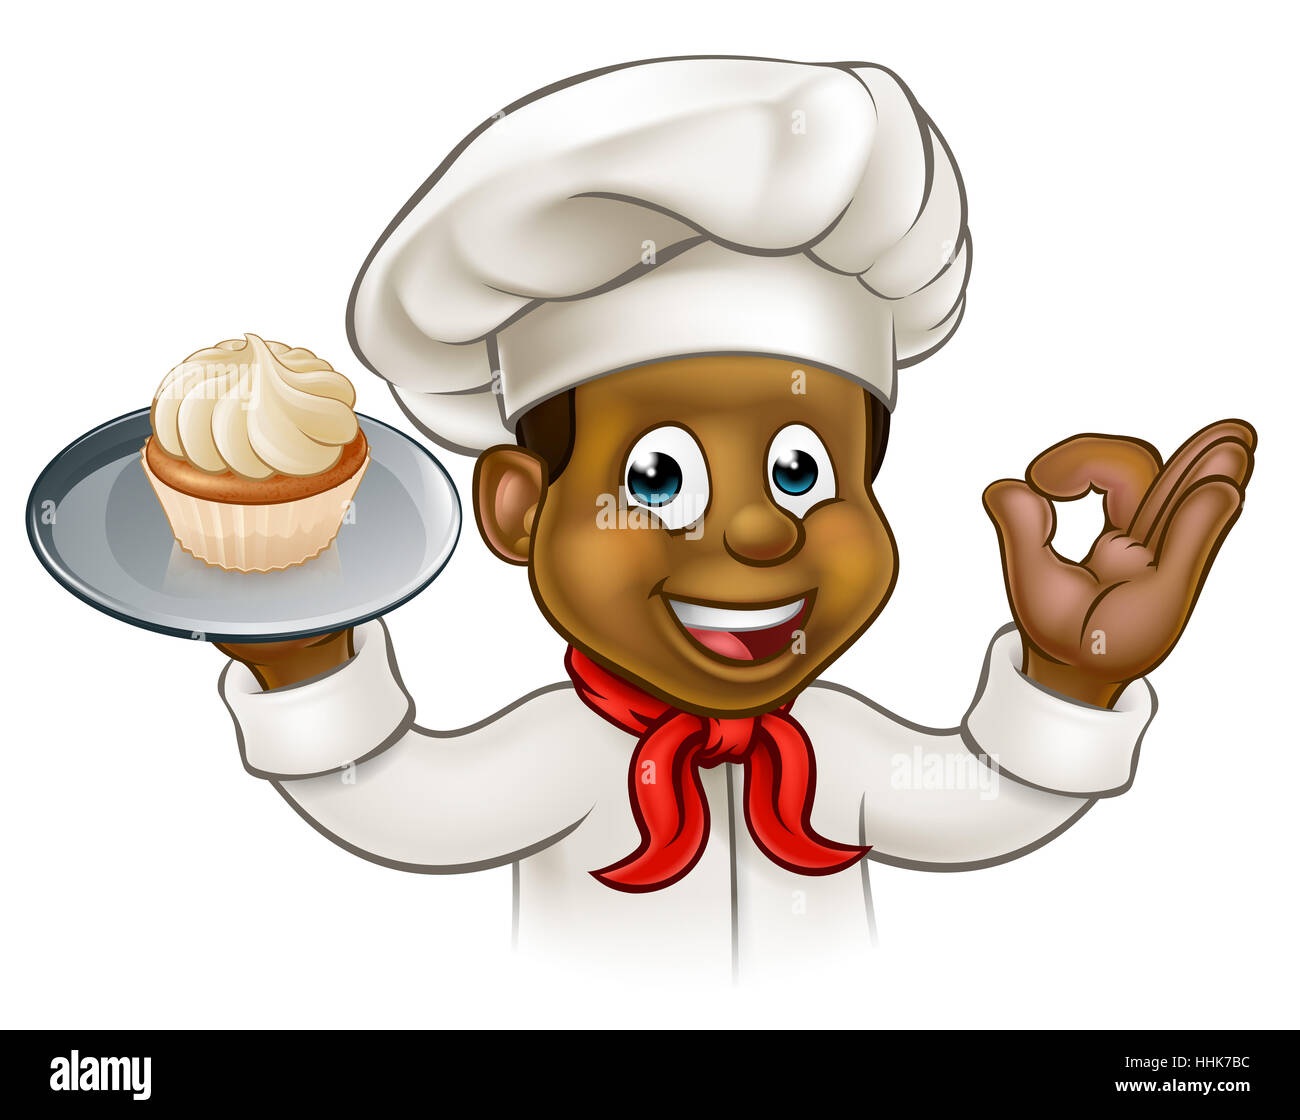 Un cartoon pâtissier noir ou caractère baker holding a plate avec un petit gâteau ou fairy cake sur elle Banque D'Images